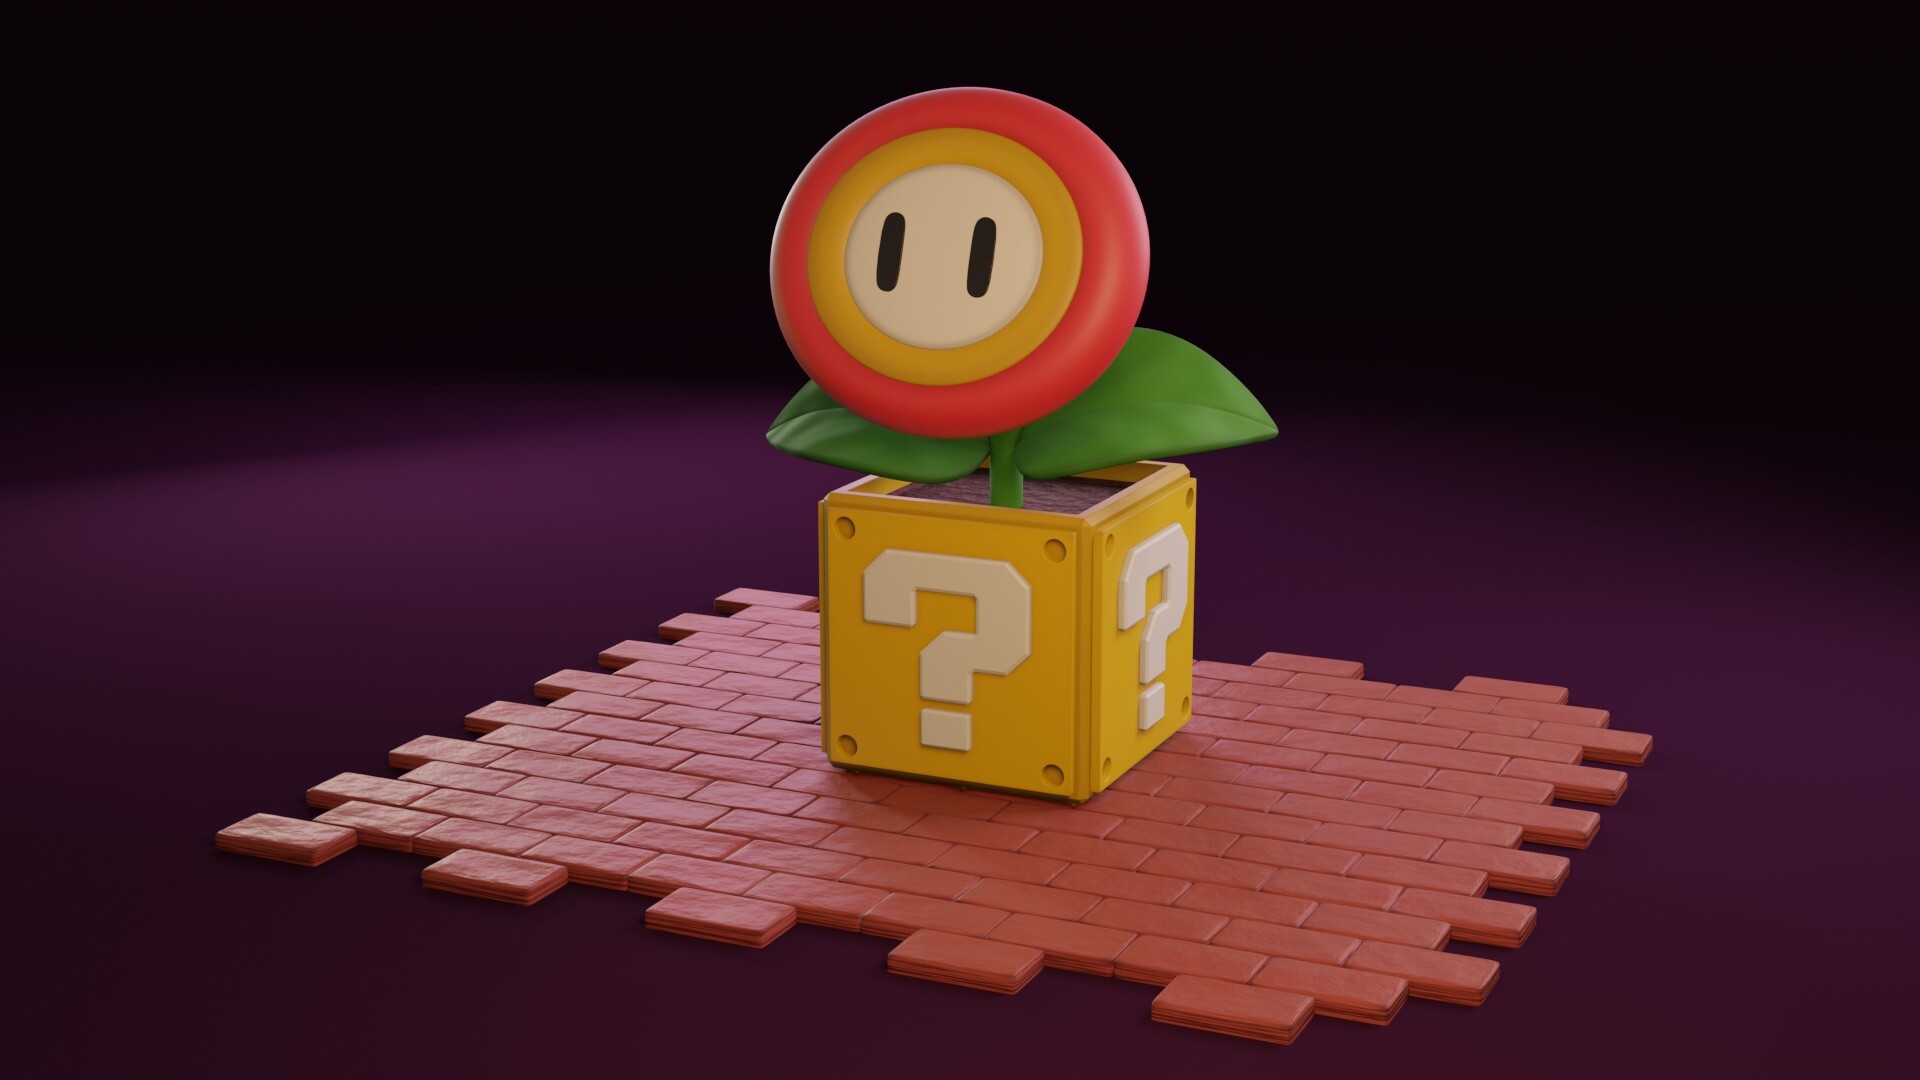 ArtStation - Super Mario Bros - Flower